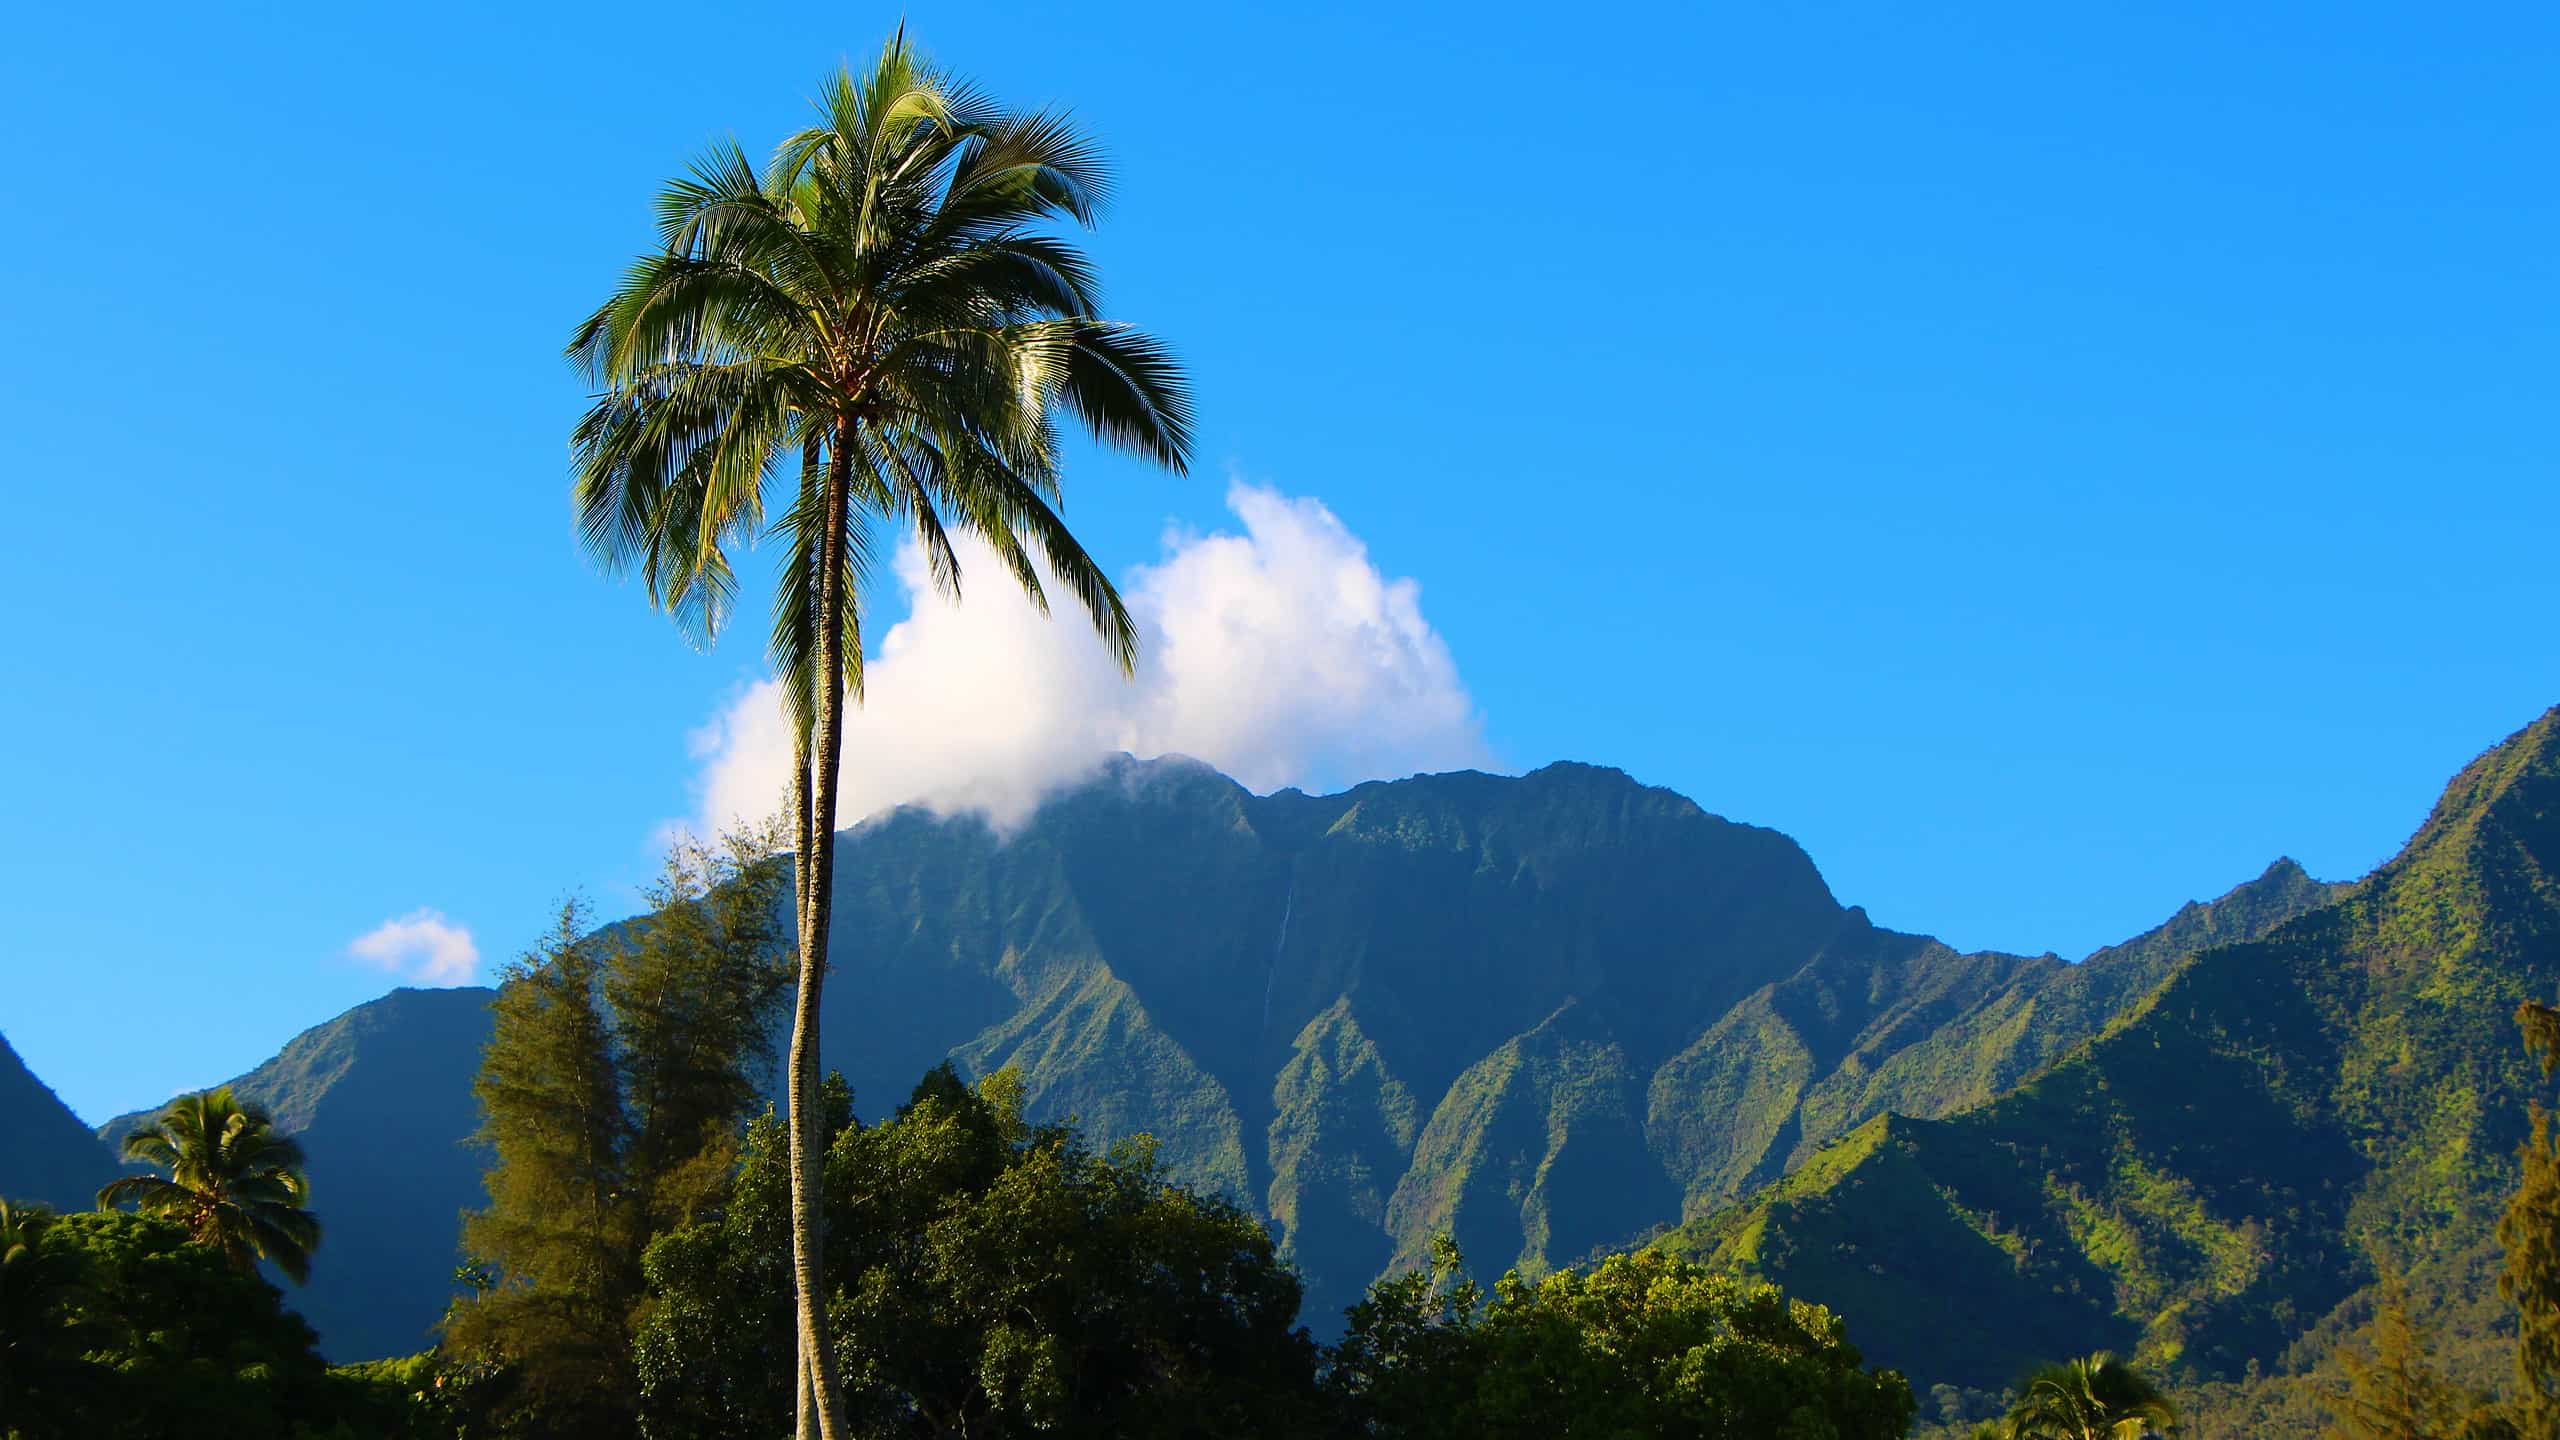 Day 9 to 13: Kauai